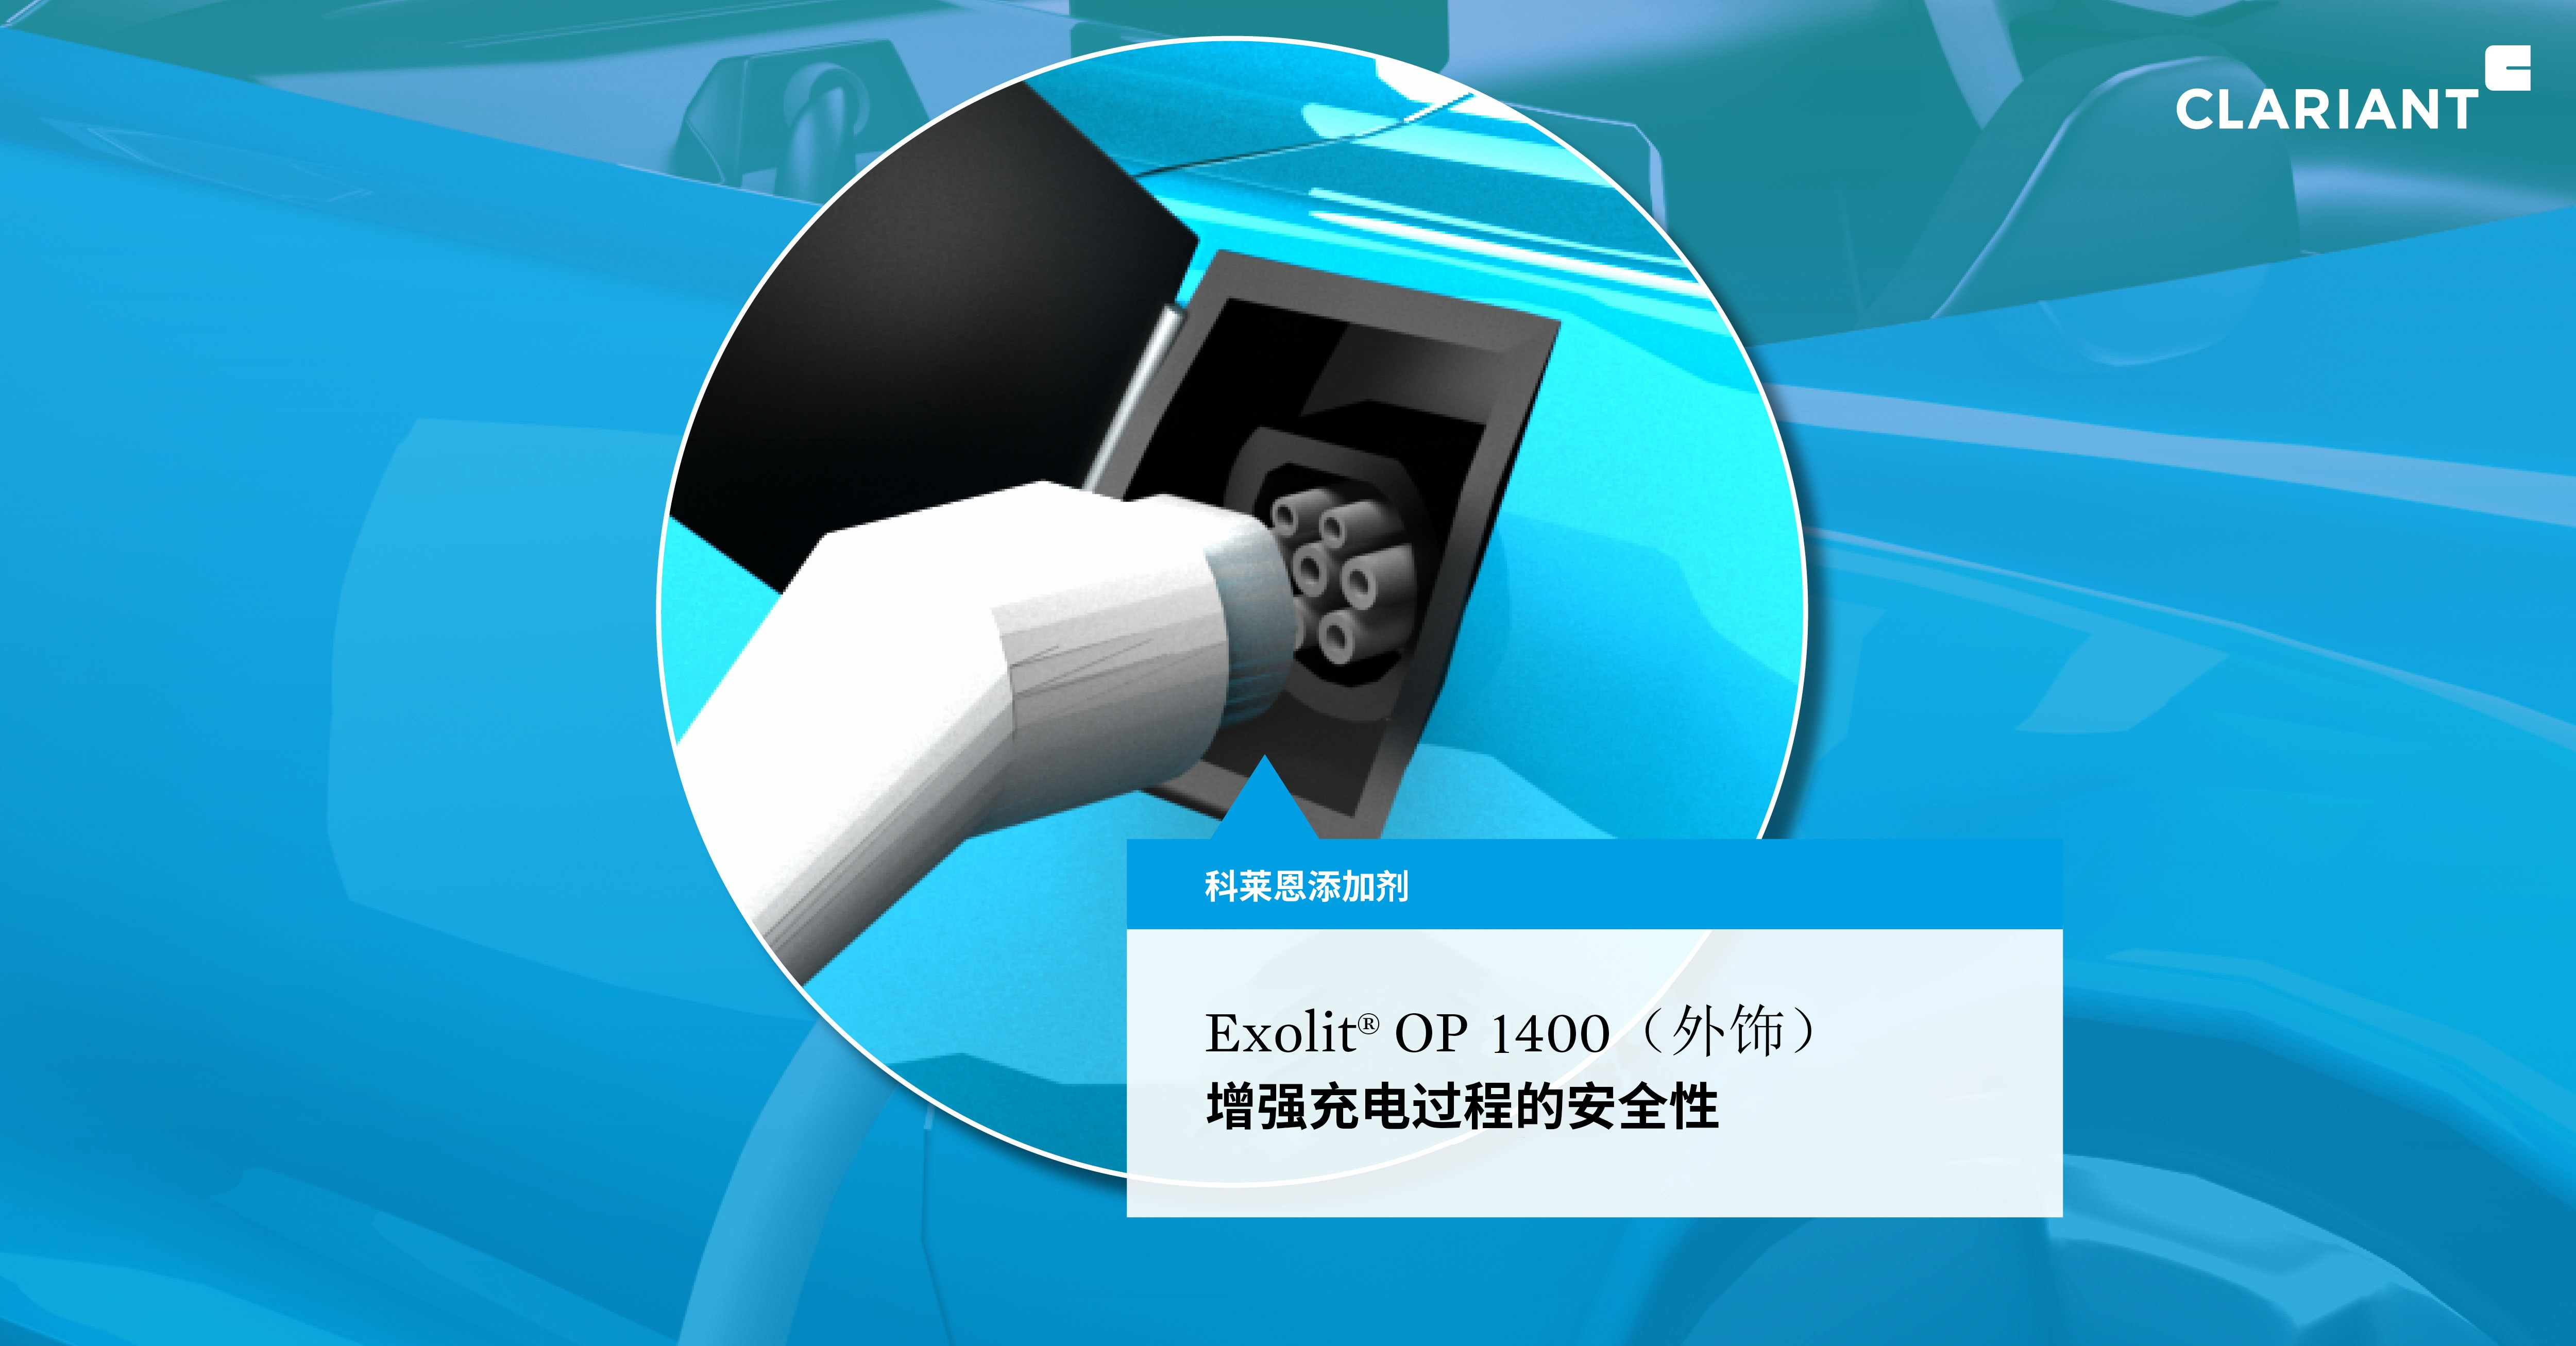 Exolit OP 1400（外饰）：增强充电过程的安全性。(照片来源：科莱恩)